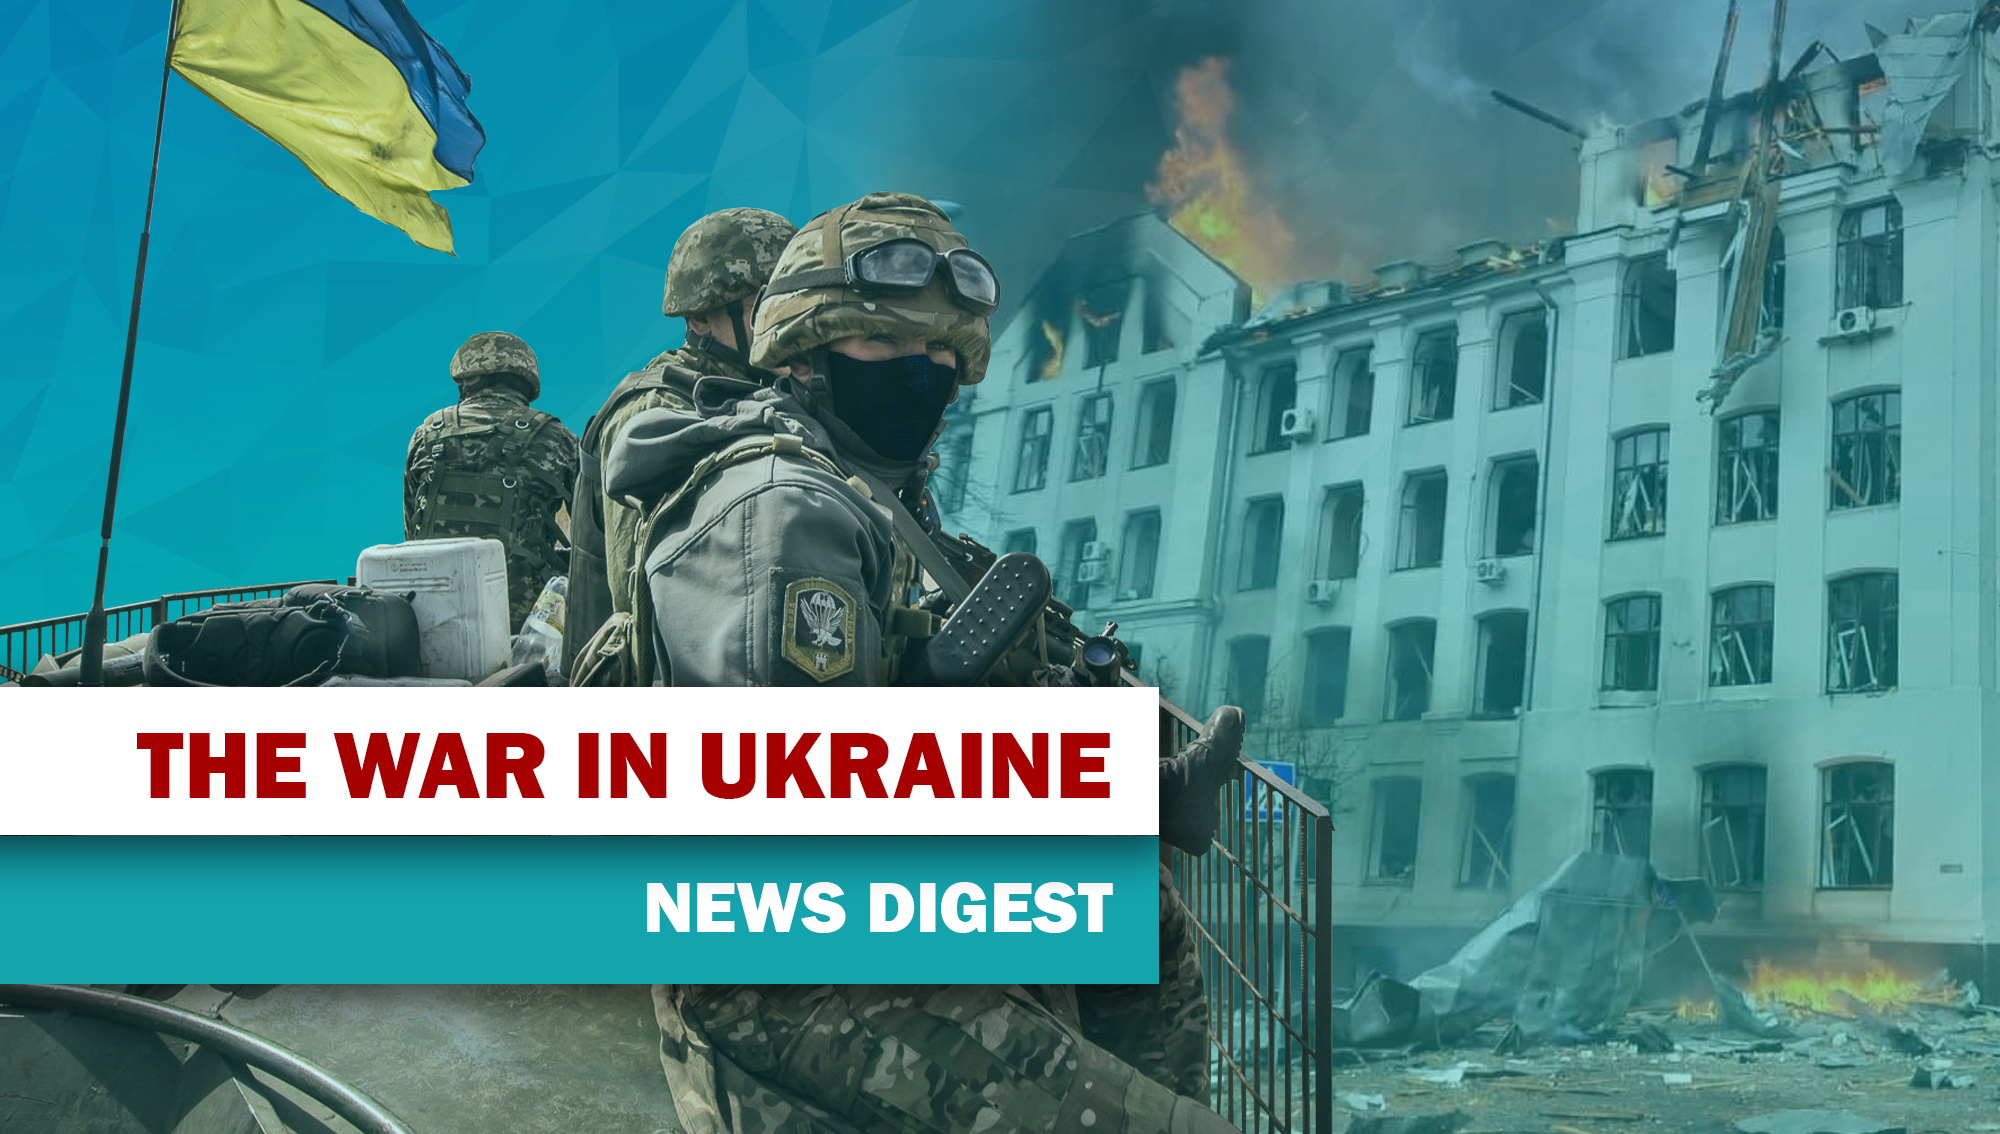 THE WAR IN UKRAINE. NEWS DIGEST 2